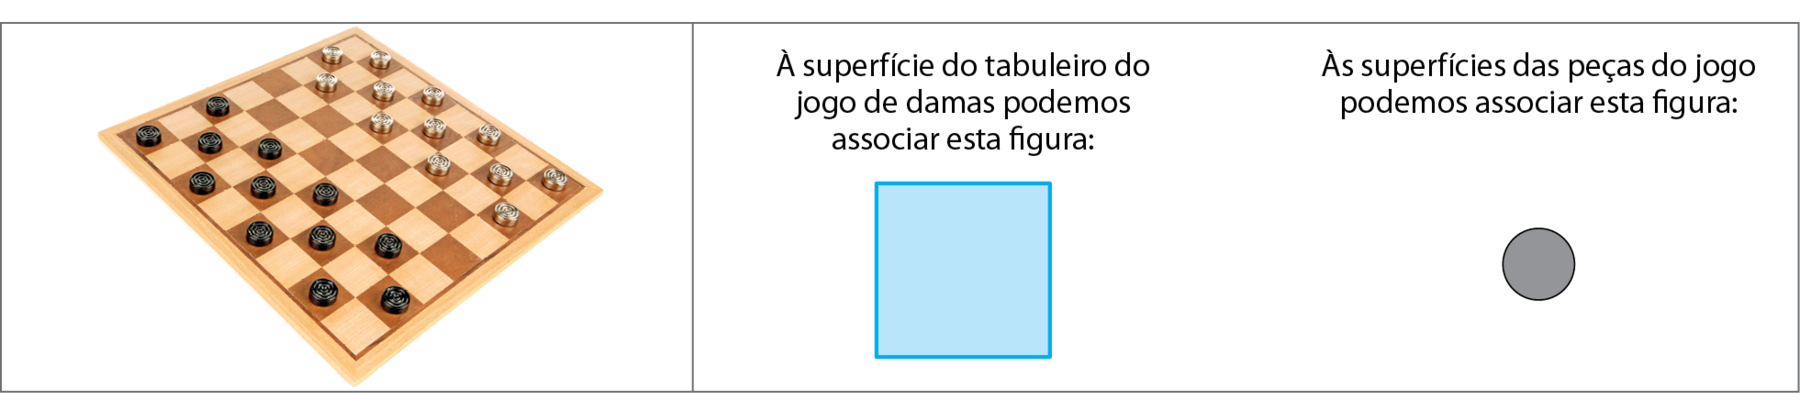 Fotografia. Jogo de damas e suas peças arredondadas estão sobre o tabuleiro quadriculado.  À superfície do tabuleiro do jogo de damas podemos associar esta figura: Ilustração. Um quadrado.   Às superfícies das peças do jogo podemos associar esta figura: Ilustração. Um círculo.